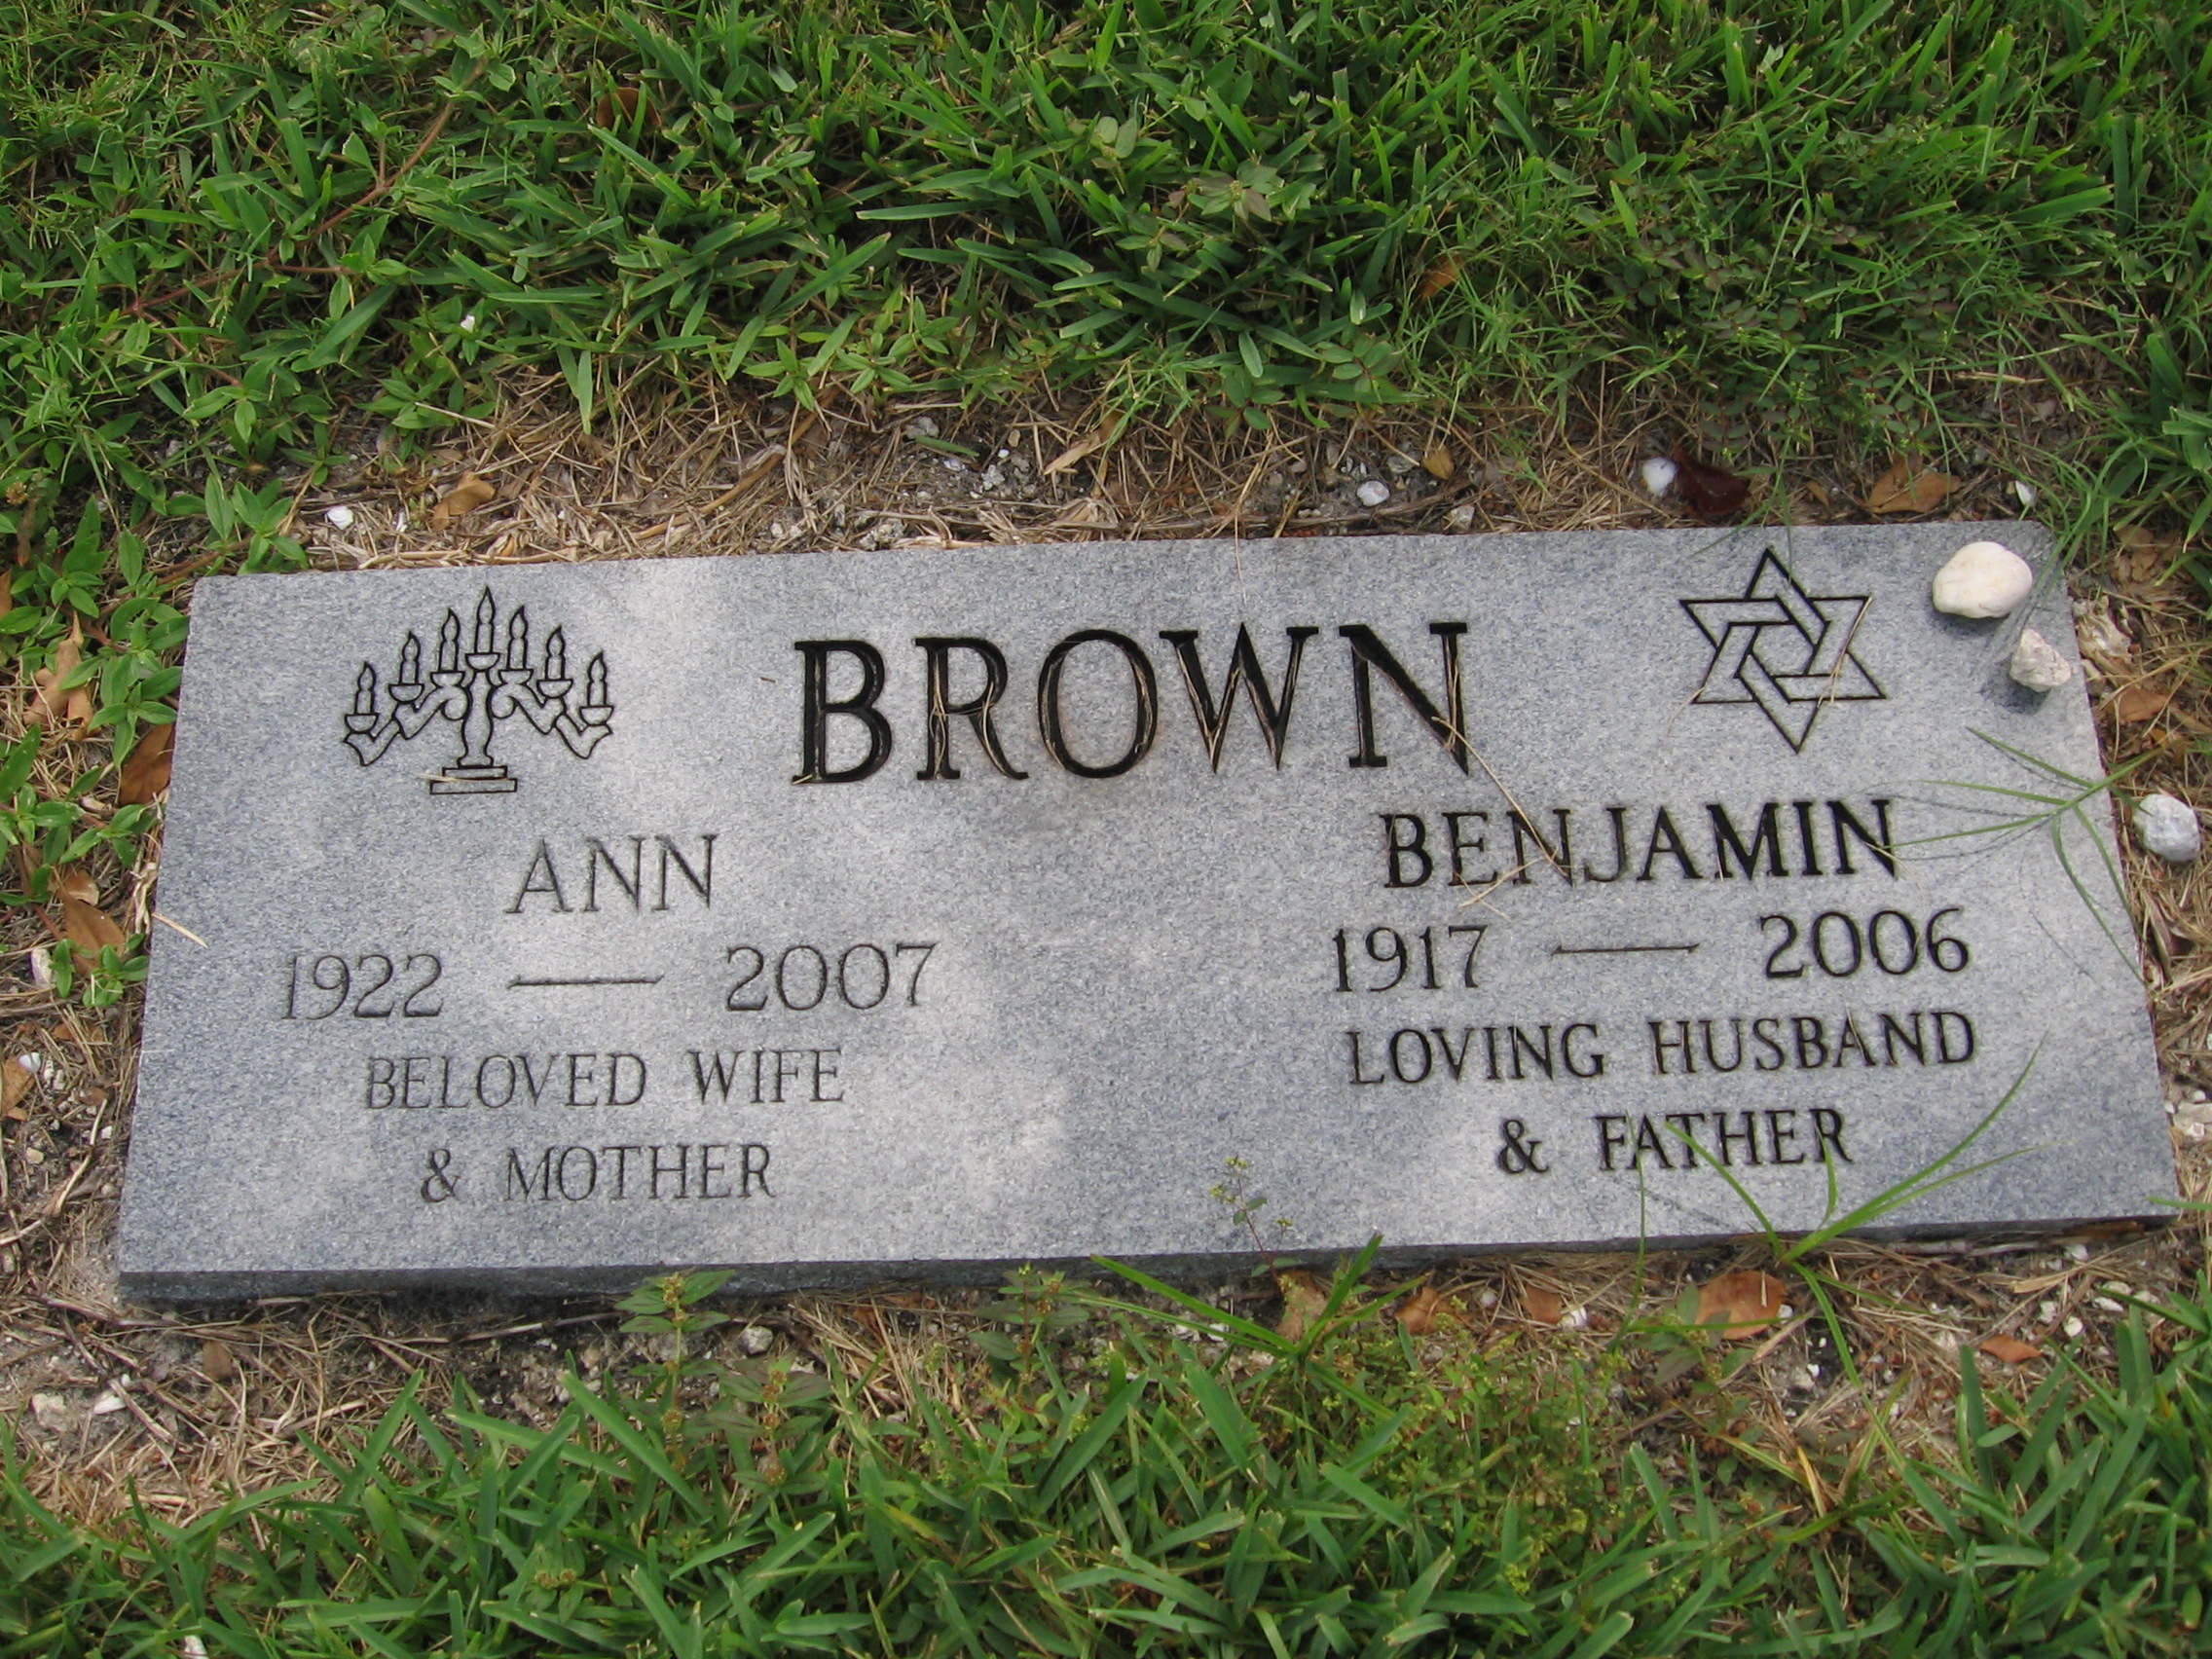 Ann Brown